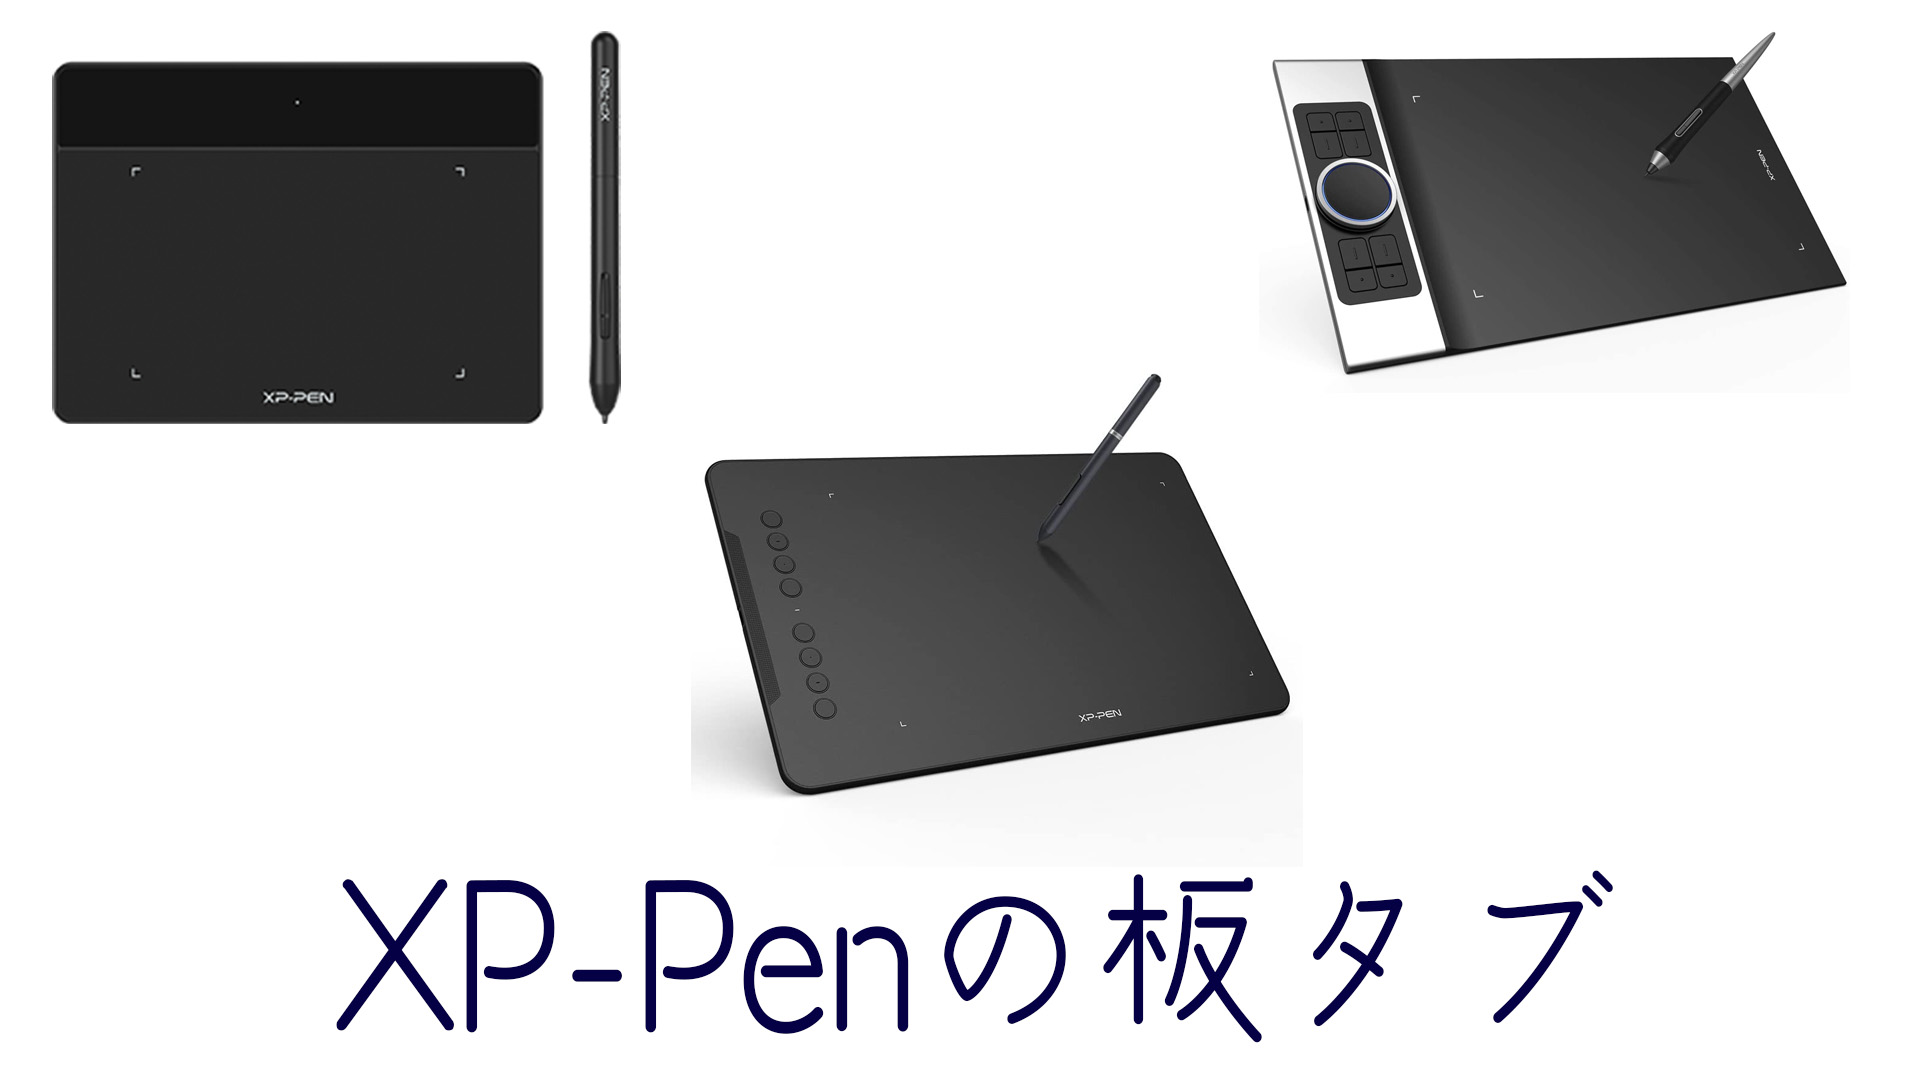 レオパードフラワーブラック XPPen ペンタブ Deco LW ワイヤレス Bluetooth対応 板タブ ペンタブレット 10x6インチ  X3チップ搭載ペン付 傾き